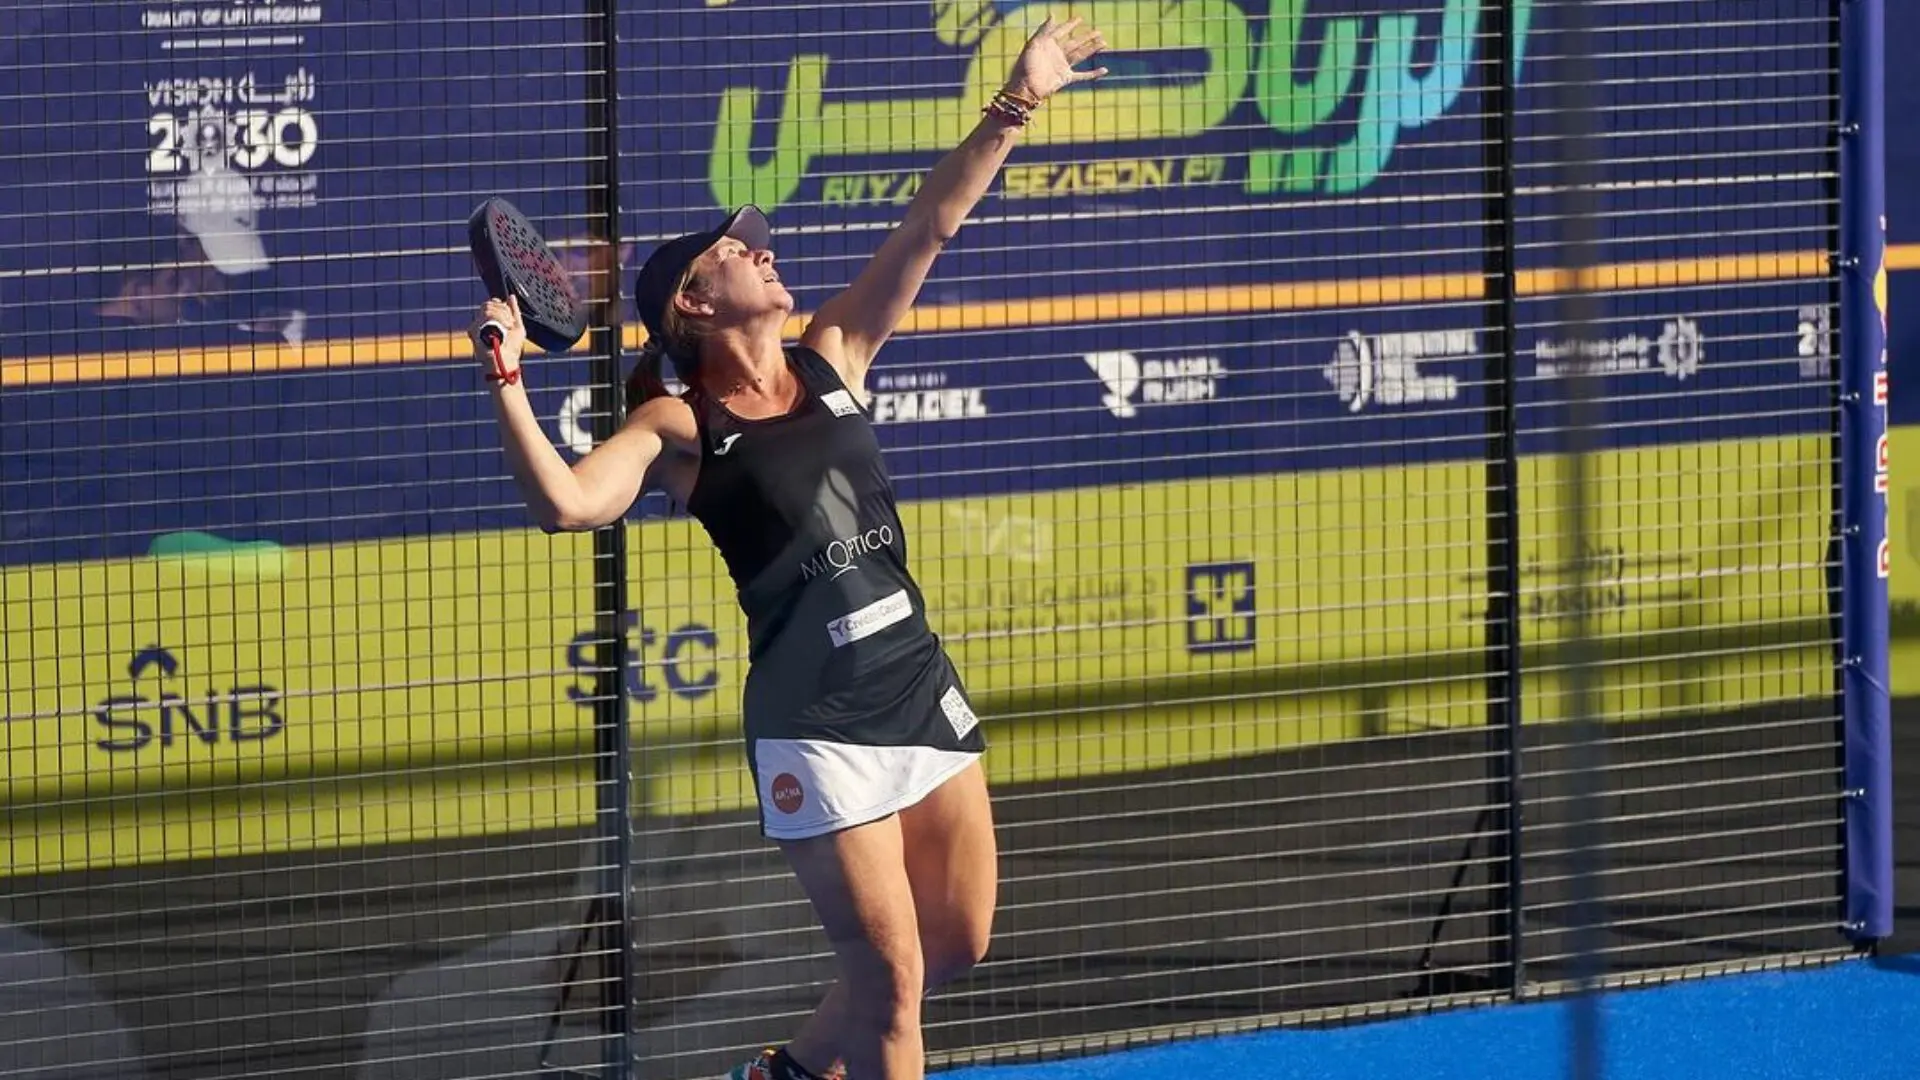 Carolina Navarro, mit 48 Jahren Viertelfinalistin eines großen Turniers!